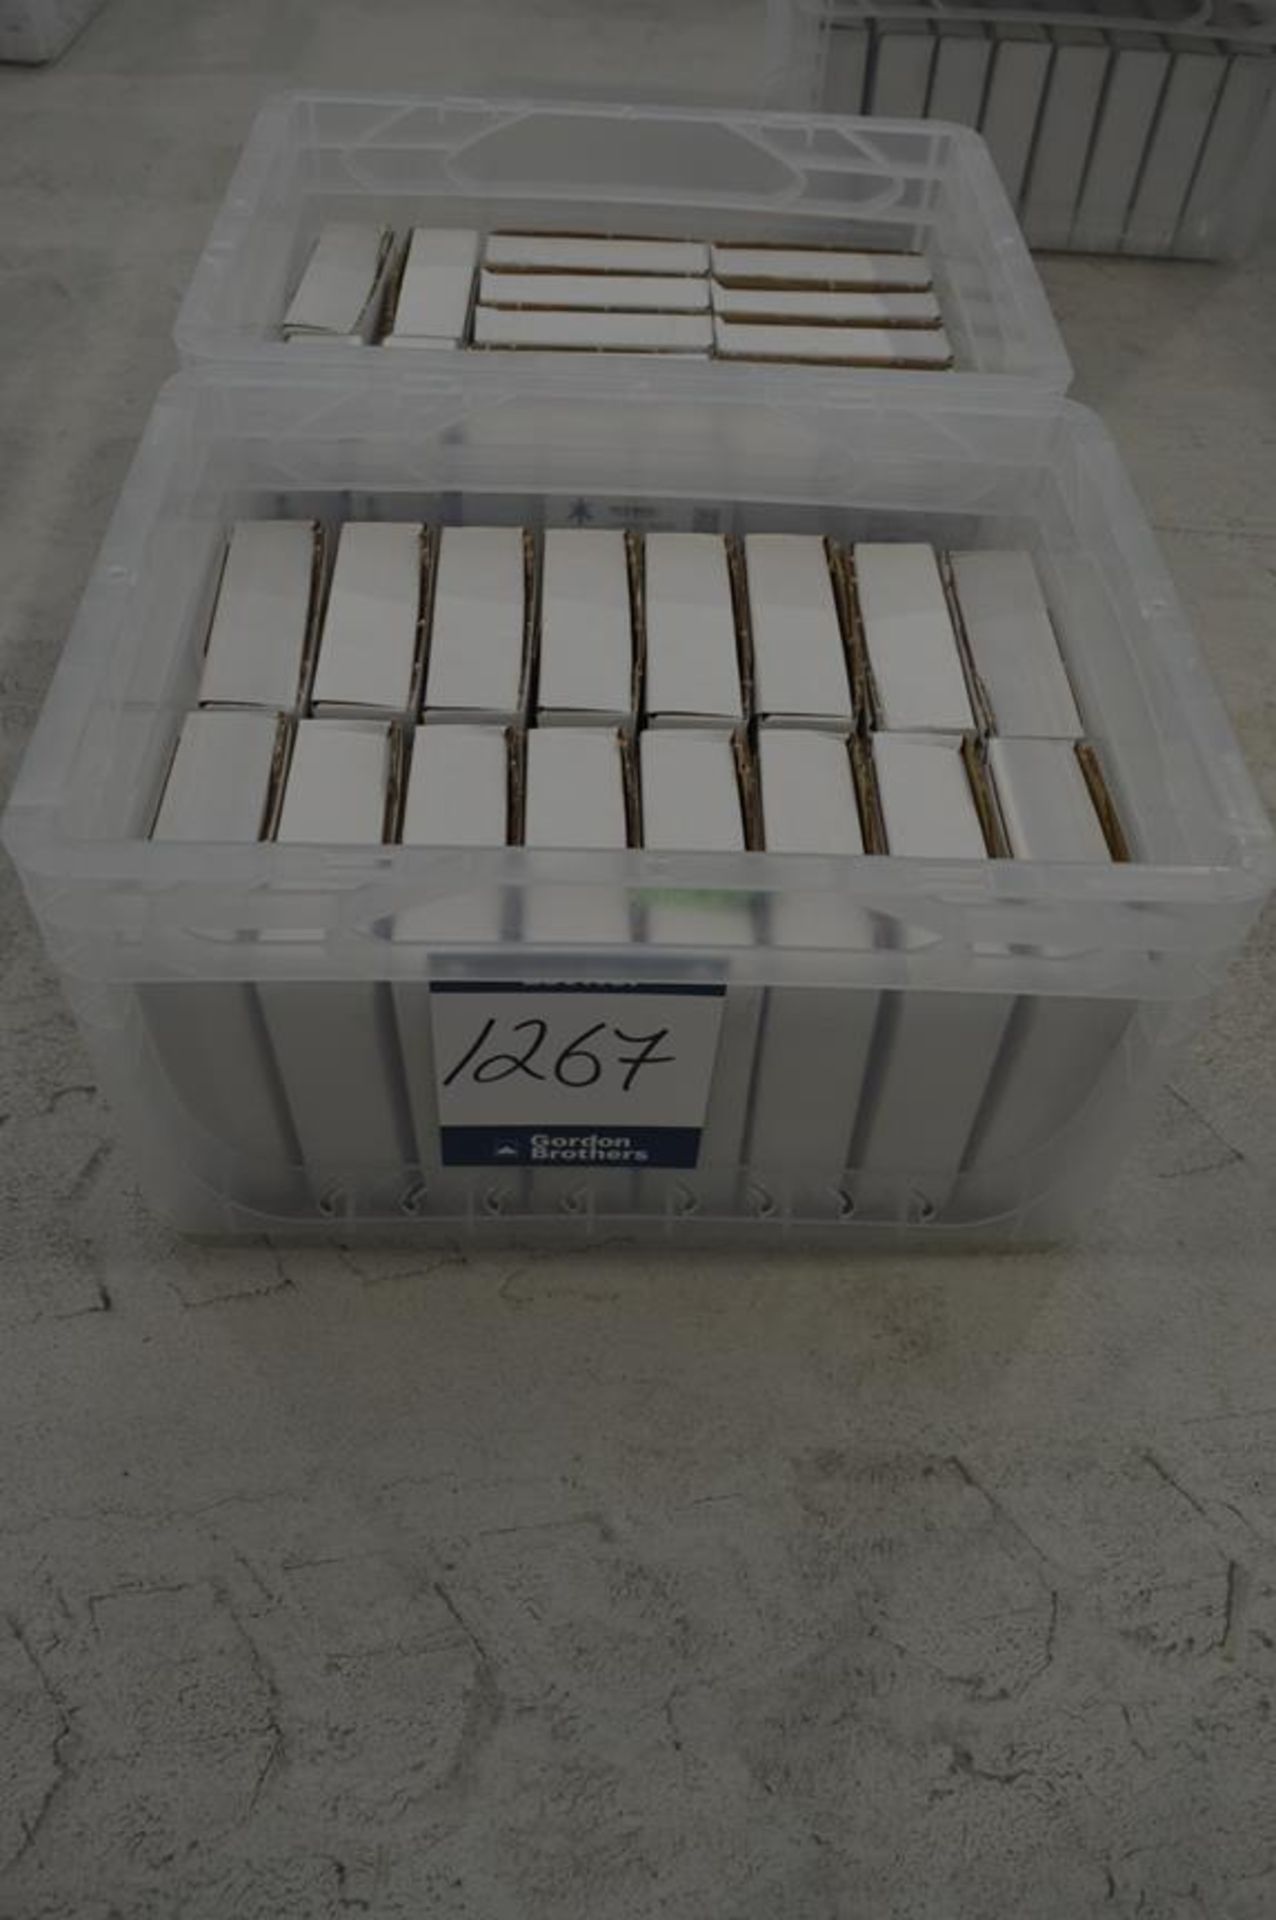 2x (no.) boxes of Allen-Bradley, escape release mechs, Part No. 277300 (boxed)